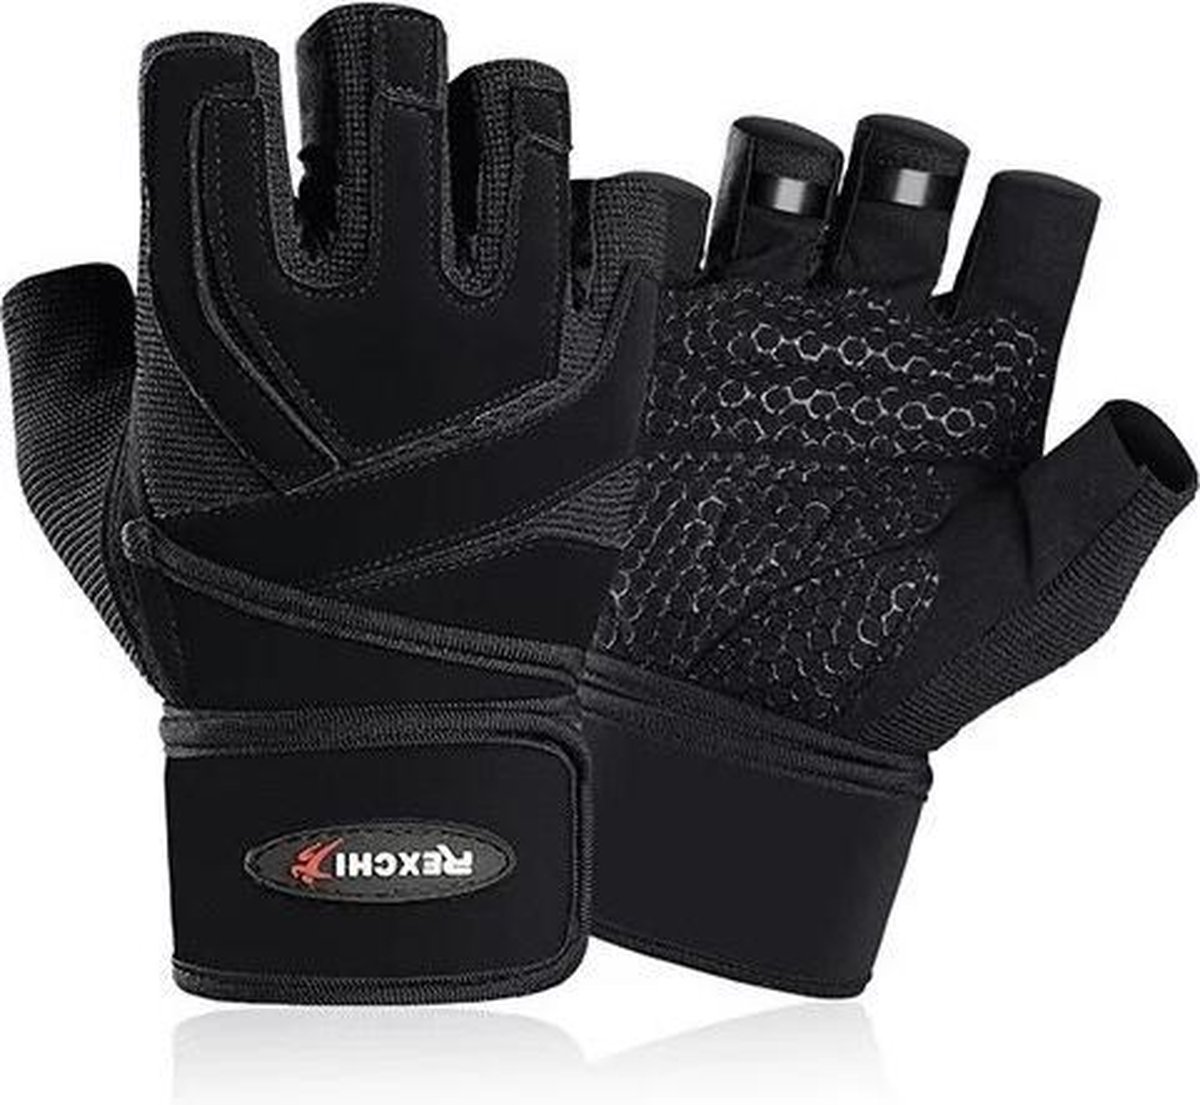 Rexchi - PRO Sport & Fitness Handschoenen Dames & Heren - XL – Krachttraining Artikelen – Gym & Crossfit Training – Zwart – Gloves voor meer grip en bescherming tegen blaren & eelt